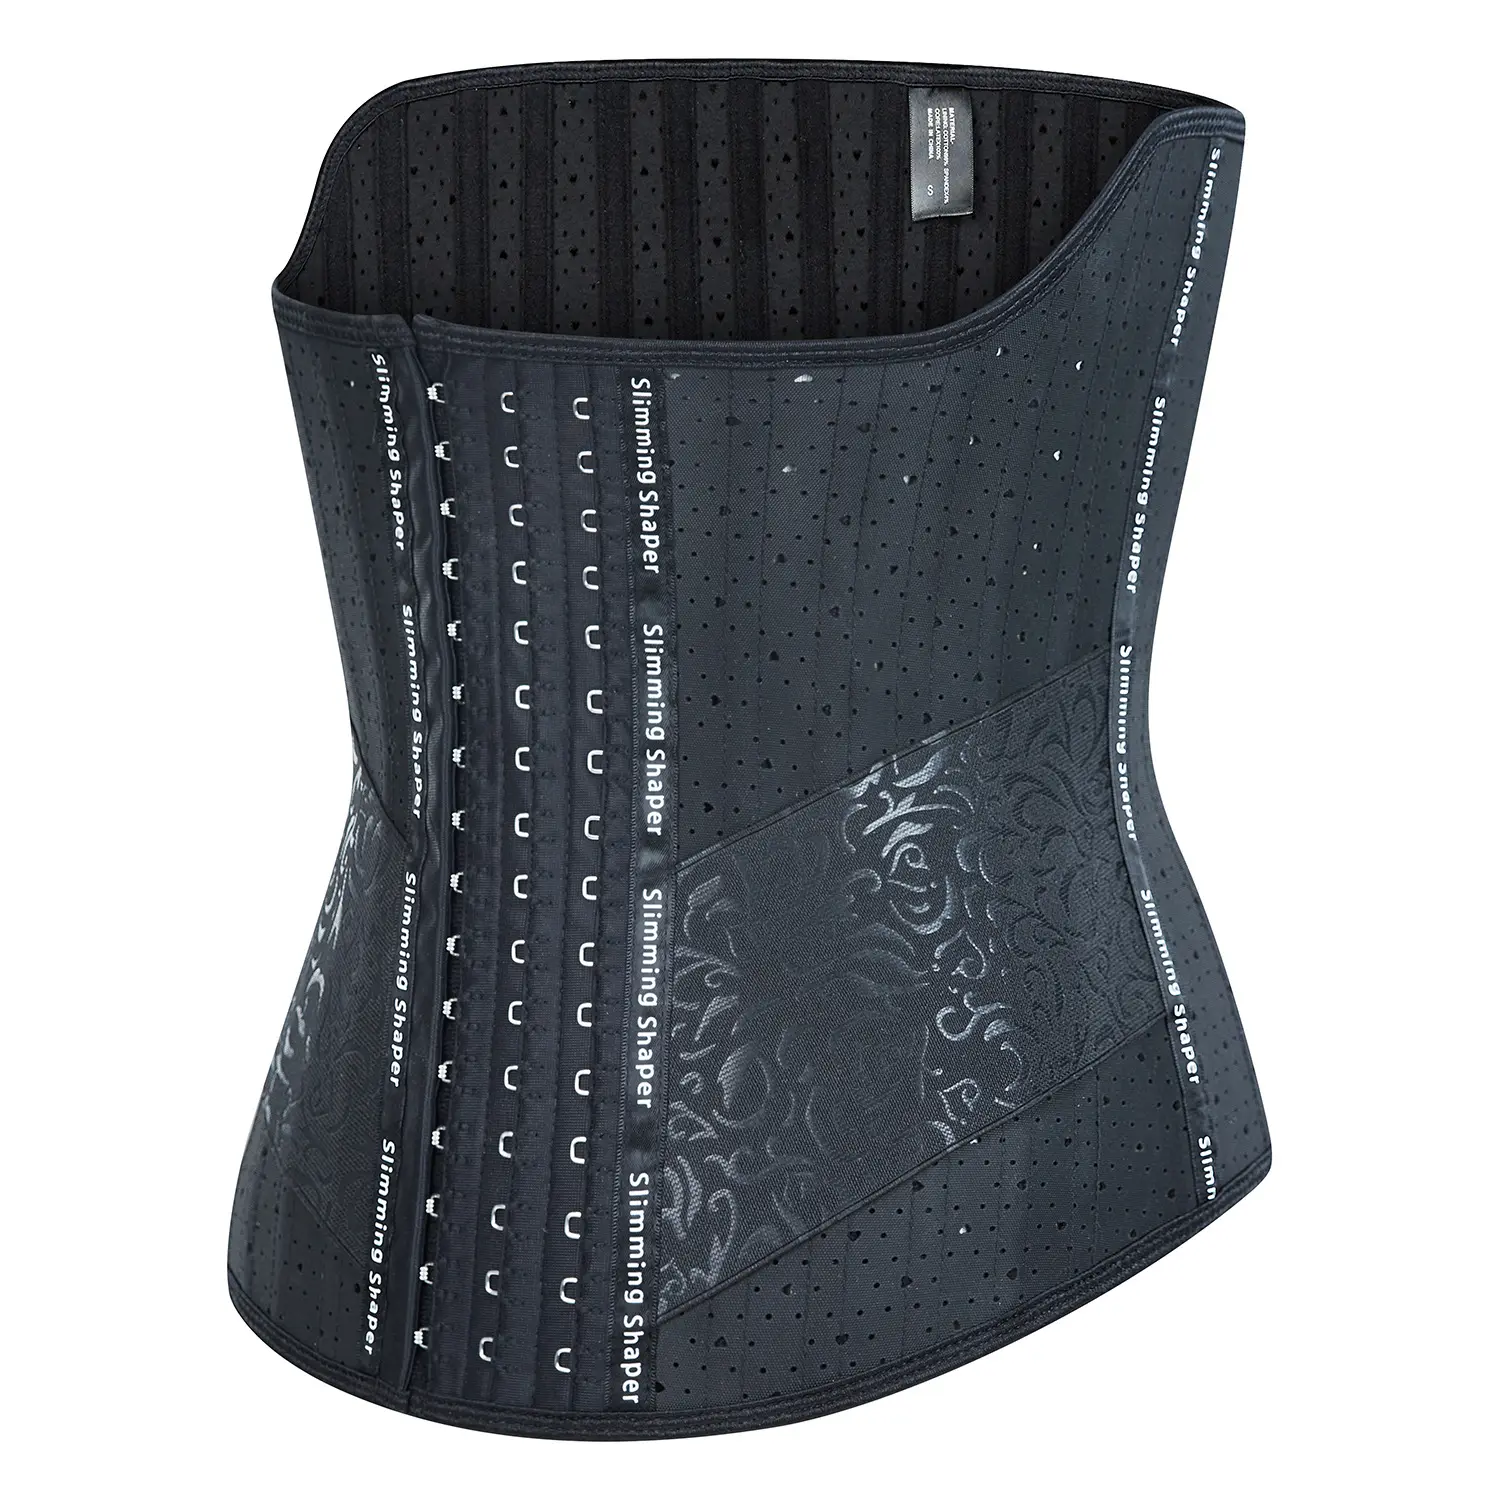 GC özel Shapewear lateks aşk Hollow korse bel plastik bel 25 çelik kemik desteği göğüs modeli korse bel kemeri siyah renk